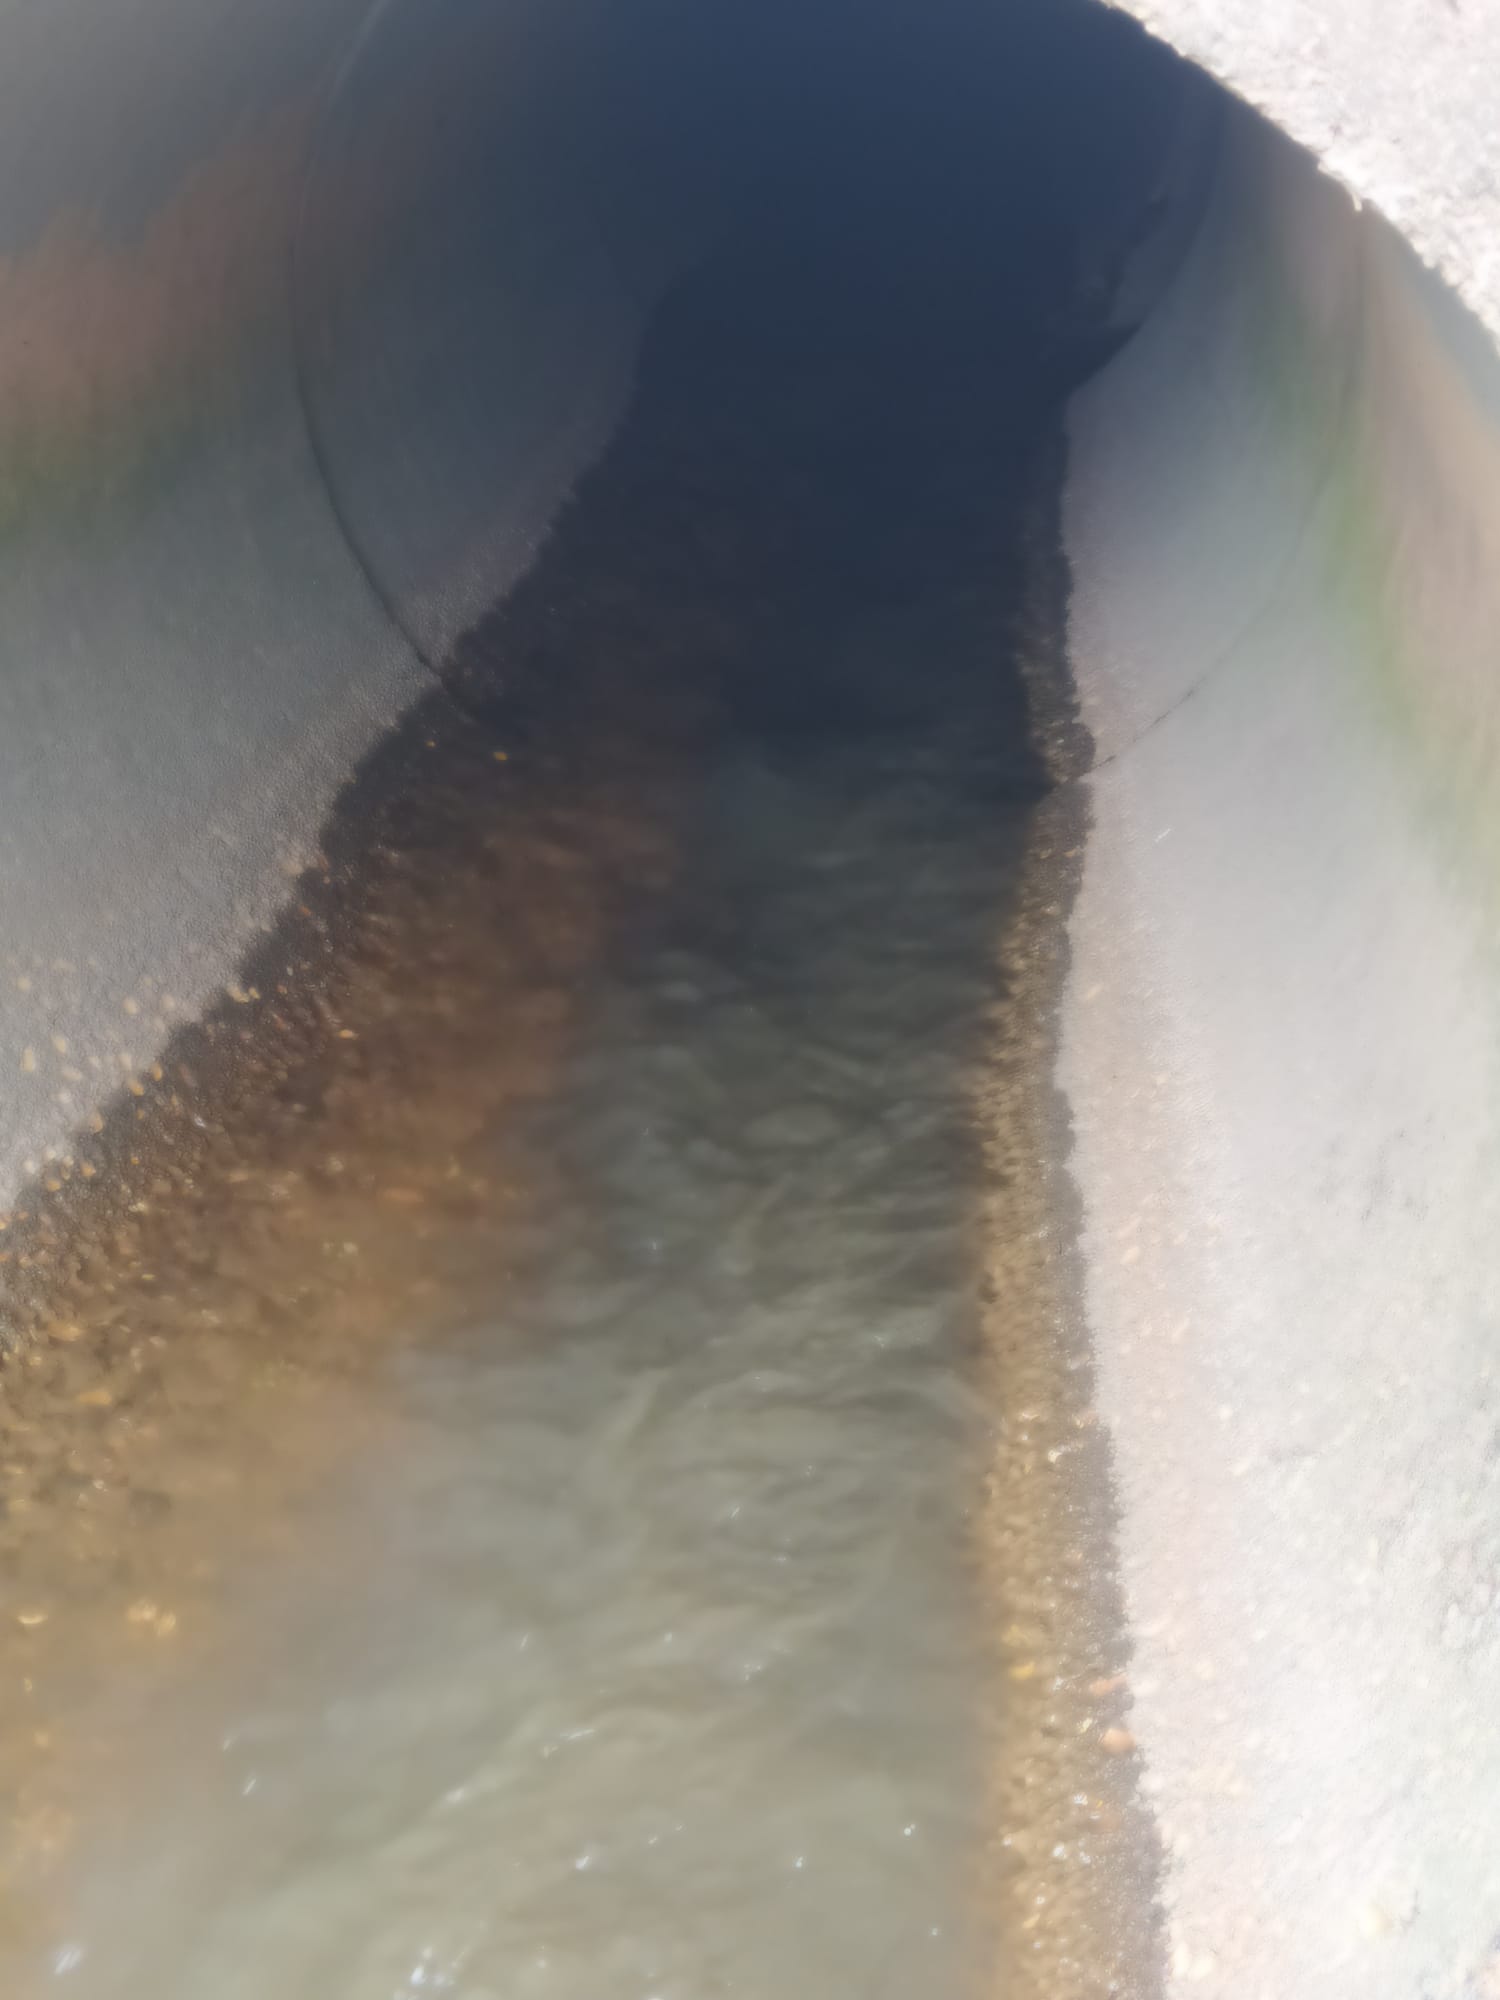 VIANA: Nova descarga poluente no ribeiro Radivau e “ninguém sabe de nada há mais de um ano”